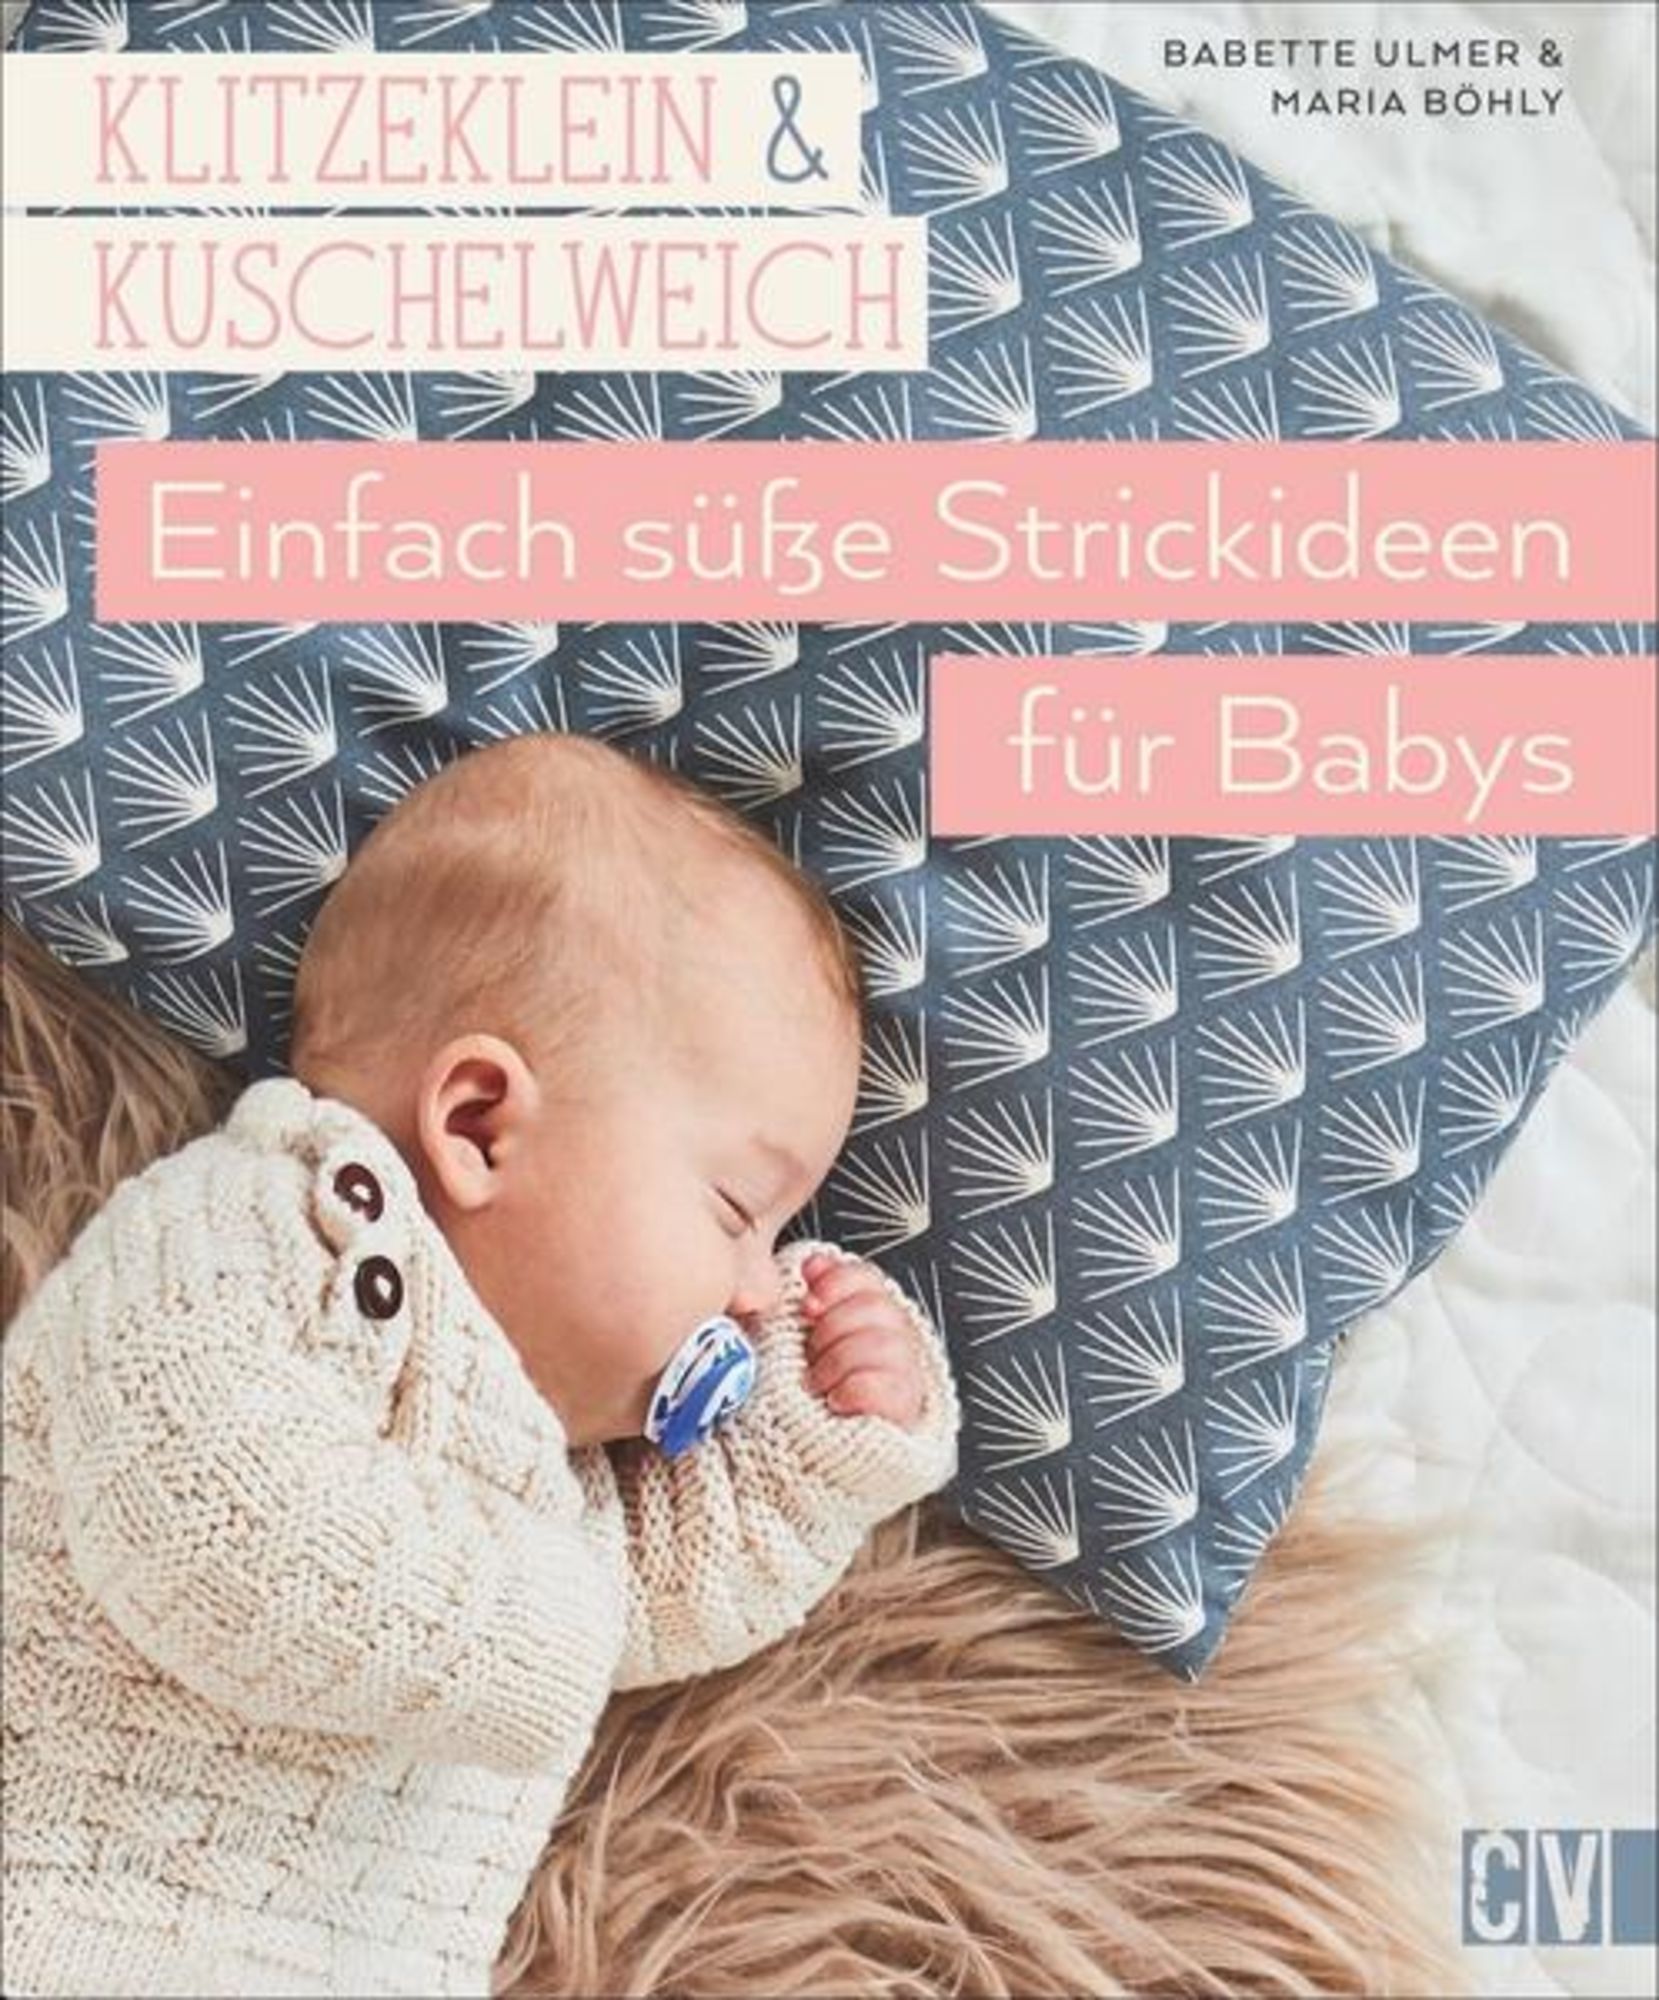 Klitzeklein & kuschelweich – Einfach süße Strickideen für Babys' von  'Babette Ulmer' - Buch - '978-3-8410-6539-1'